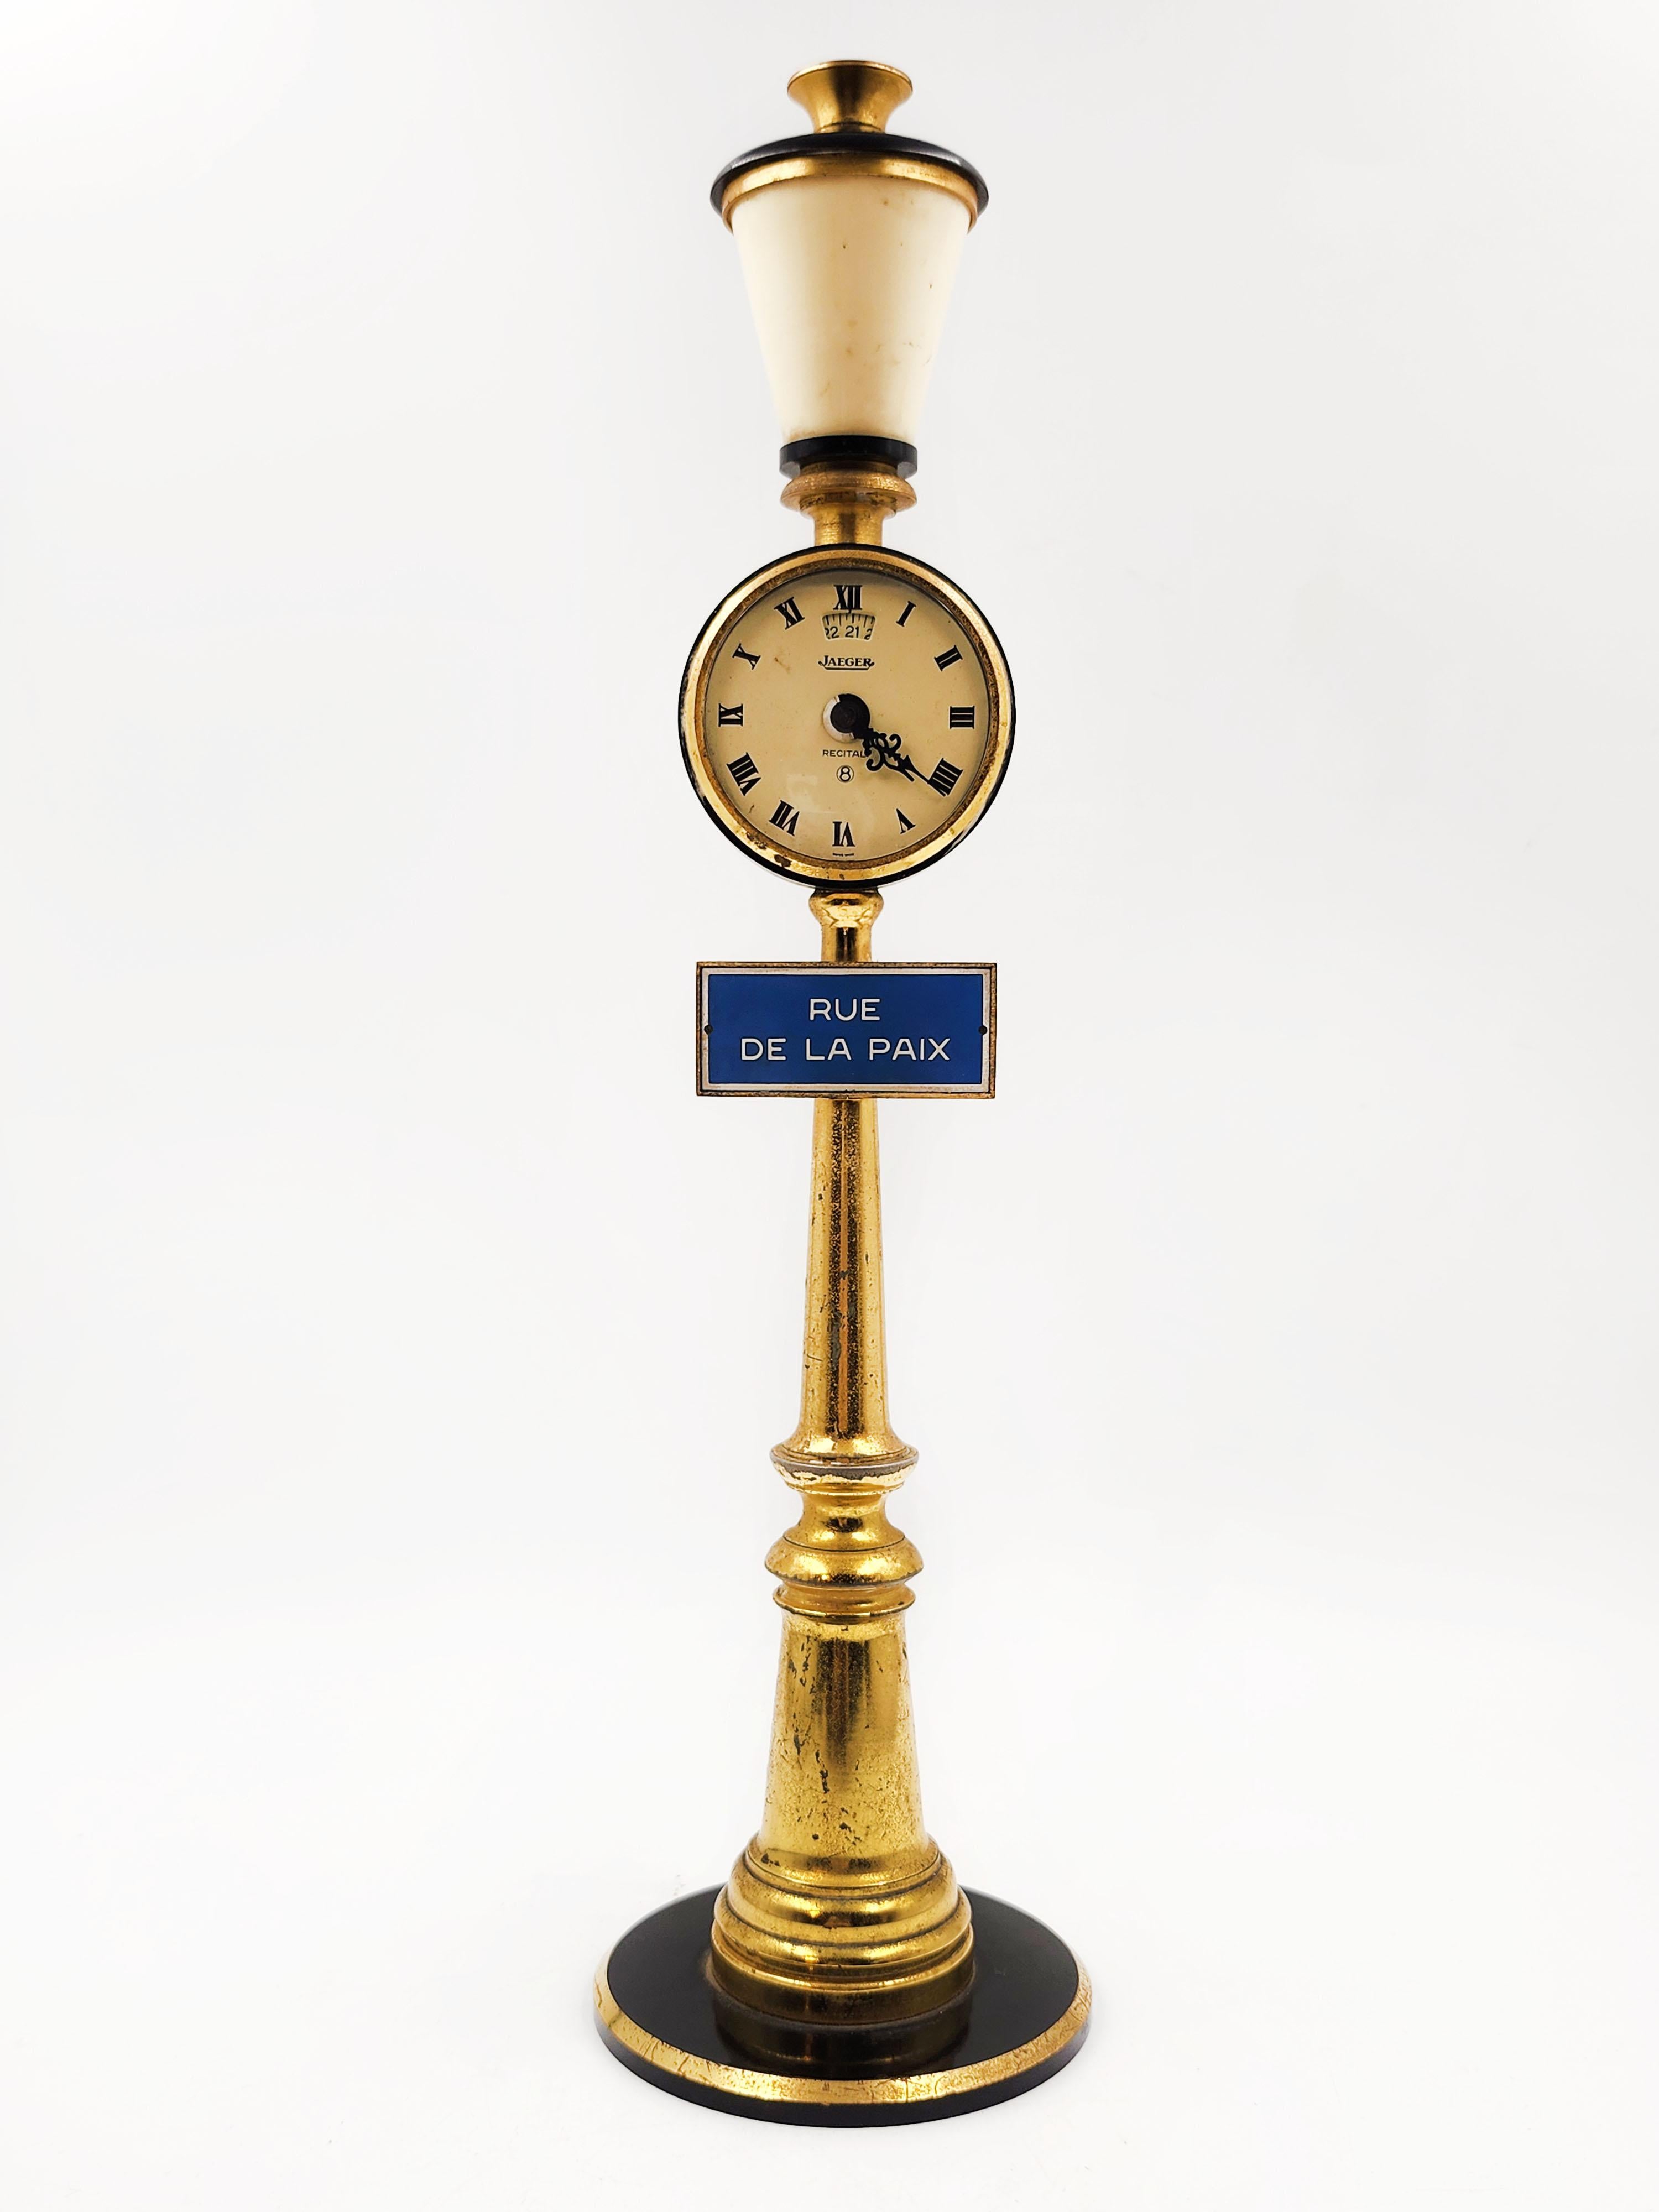 Jaeger Lecoultre Kaminuhr Rue De La Paix, 1960er Jahre

Schöne Vintage Jaeger Le Coultre Miniatur-Lampe Uhr für Tisch oder Schreibtisch. Es wurde getestet und funktioniert.

Sie hat einen geraden Aufzug, eine monometallische Unruh, ein mit Steinen